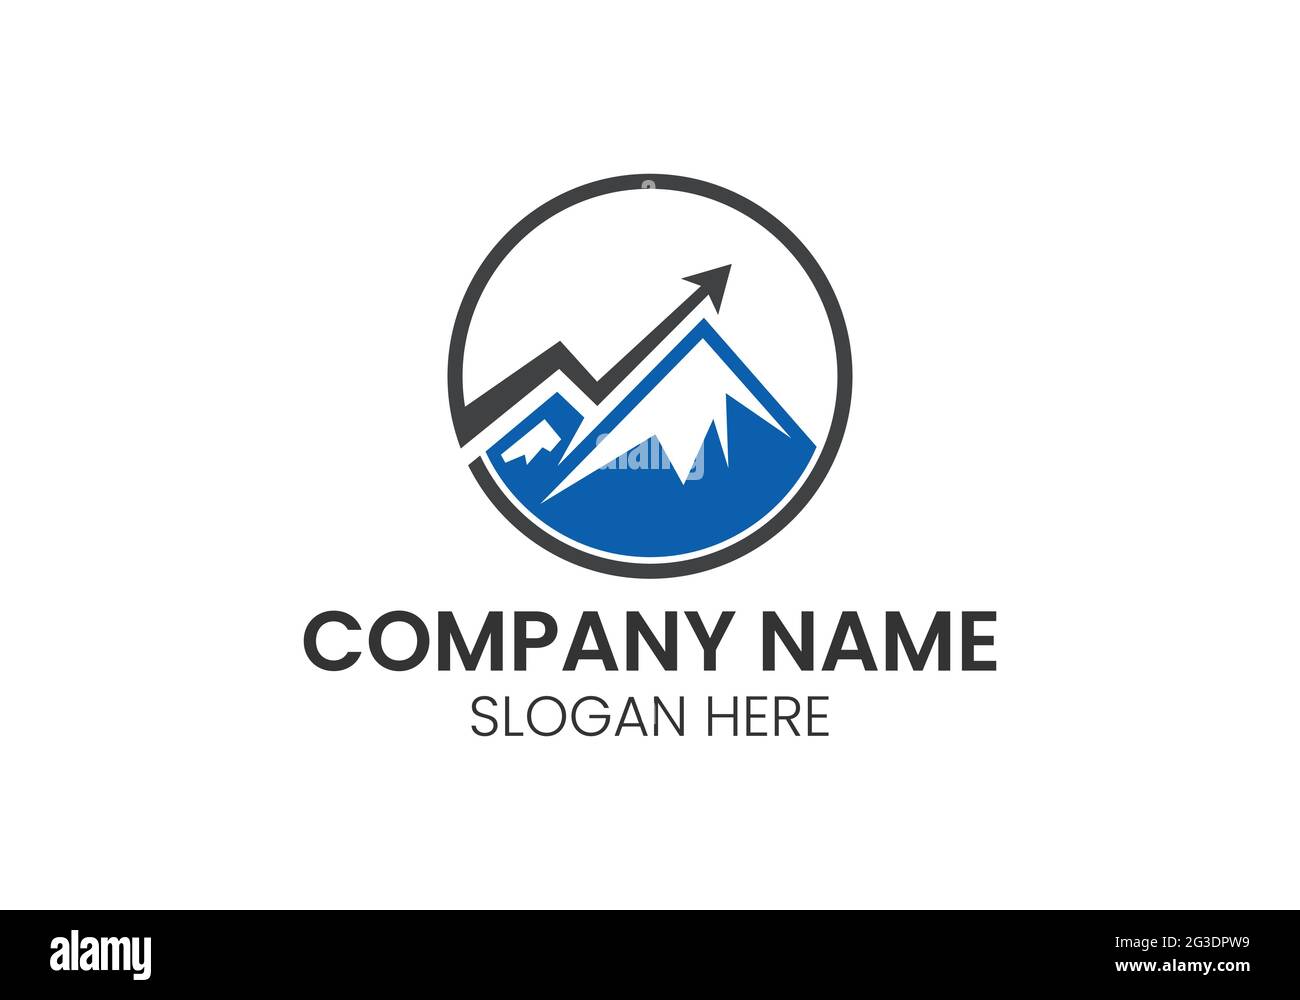 Combinaison de la forme de la montagne et de la flèche pour marketing finance comptable conseiller logo vecteur de conception Illustration de Vecteur